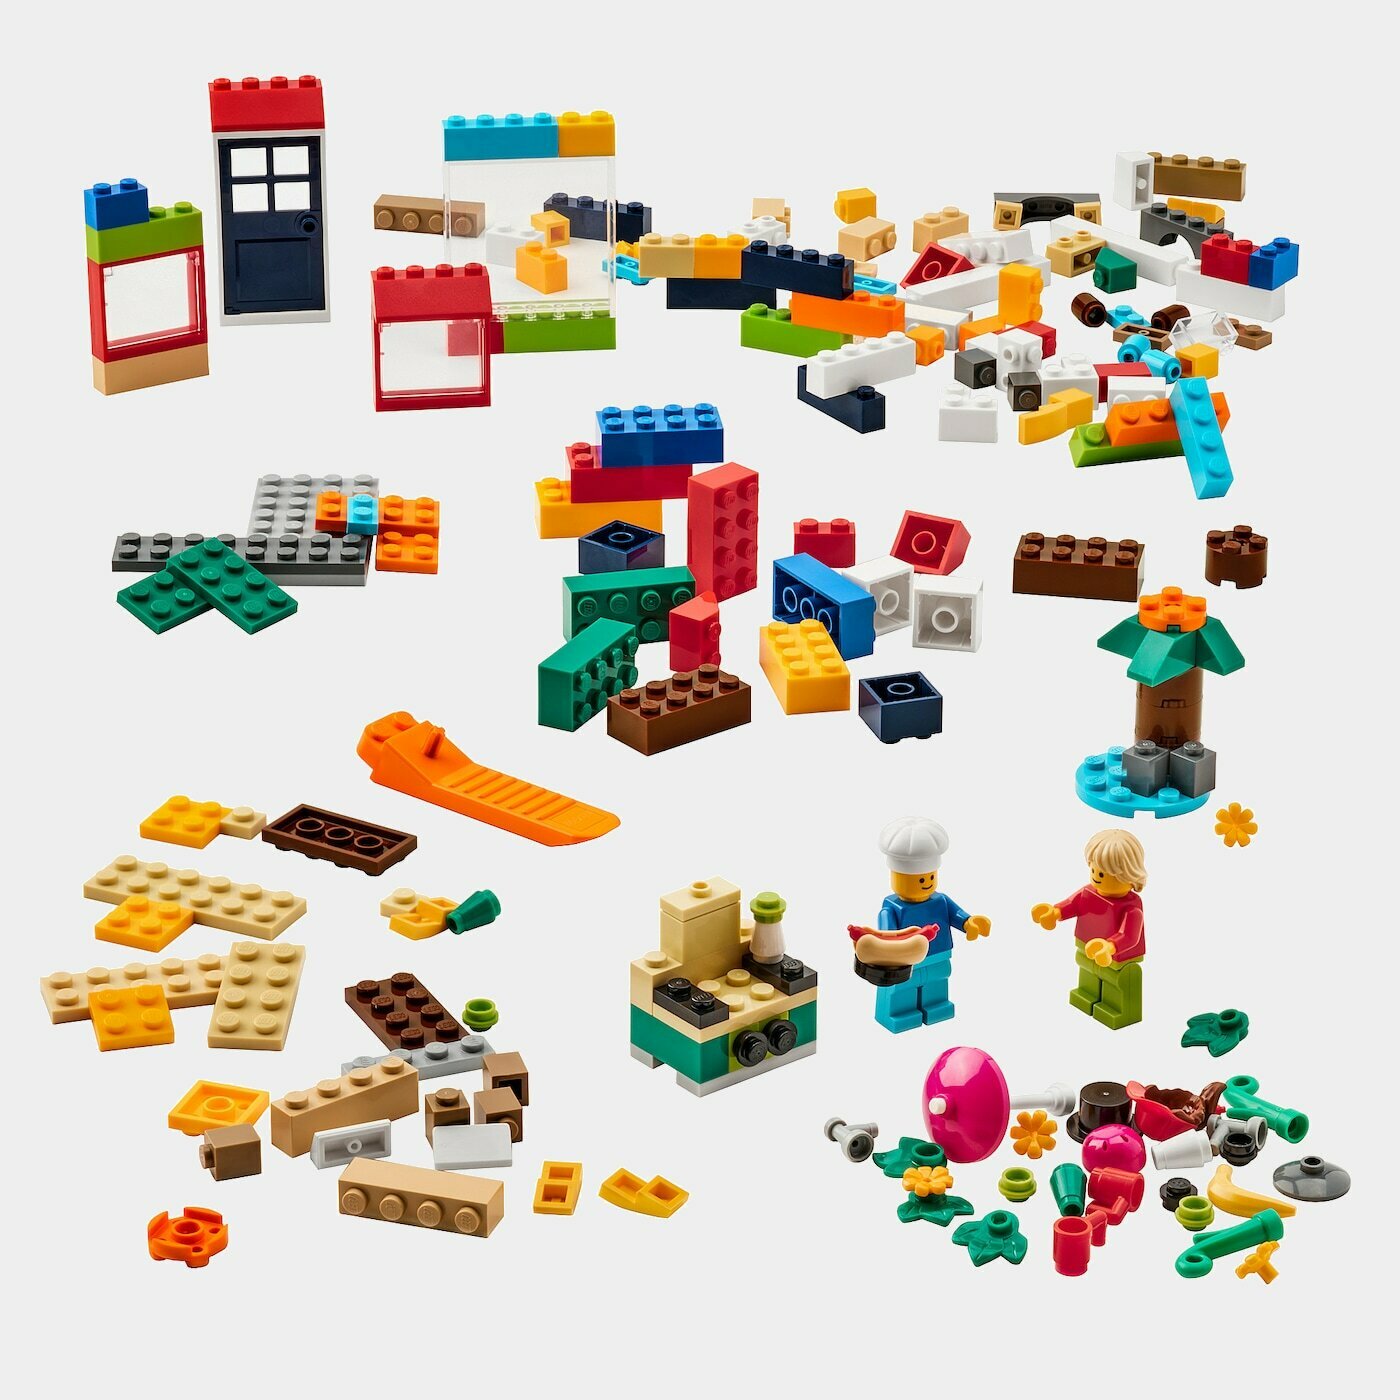 BYGGLEK LEGO®-Steine, 201 St.  -  - Möbel Ideen für dein Zuhause von Home Trends. Möbel Trends von Social Media Influencer für dein Skandi Zuhause.